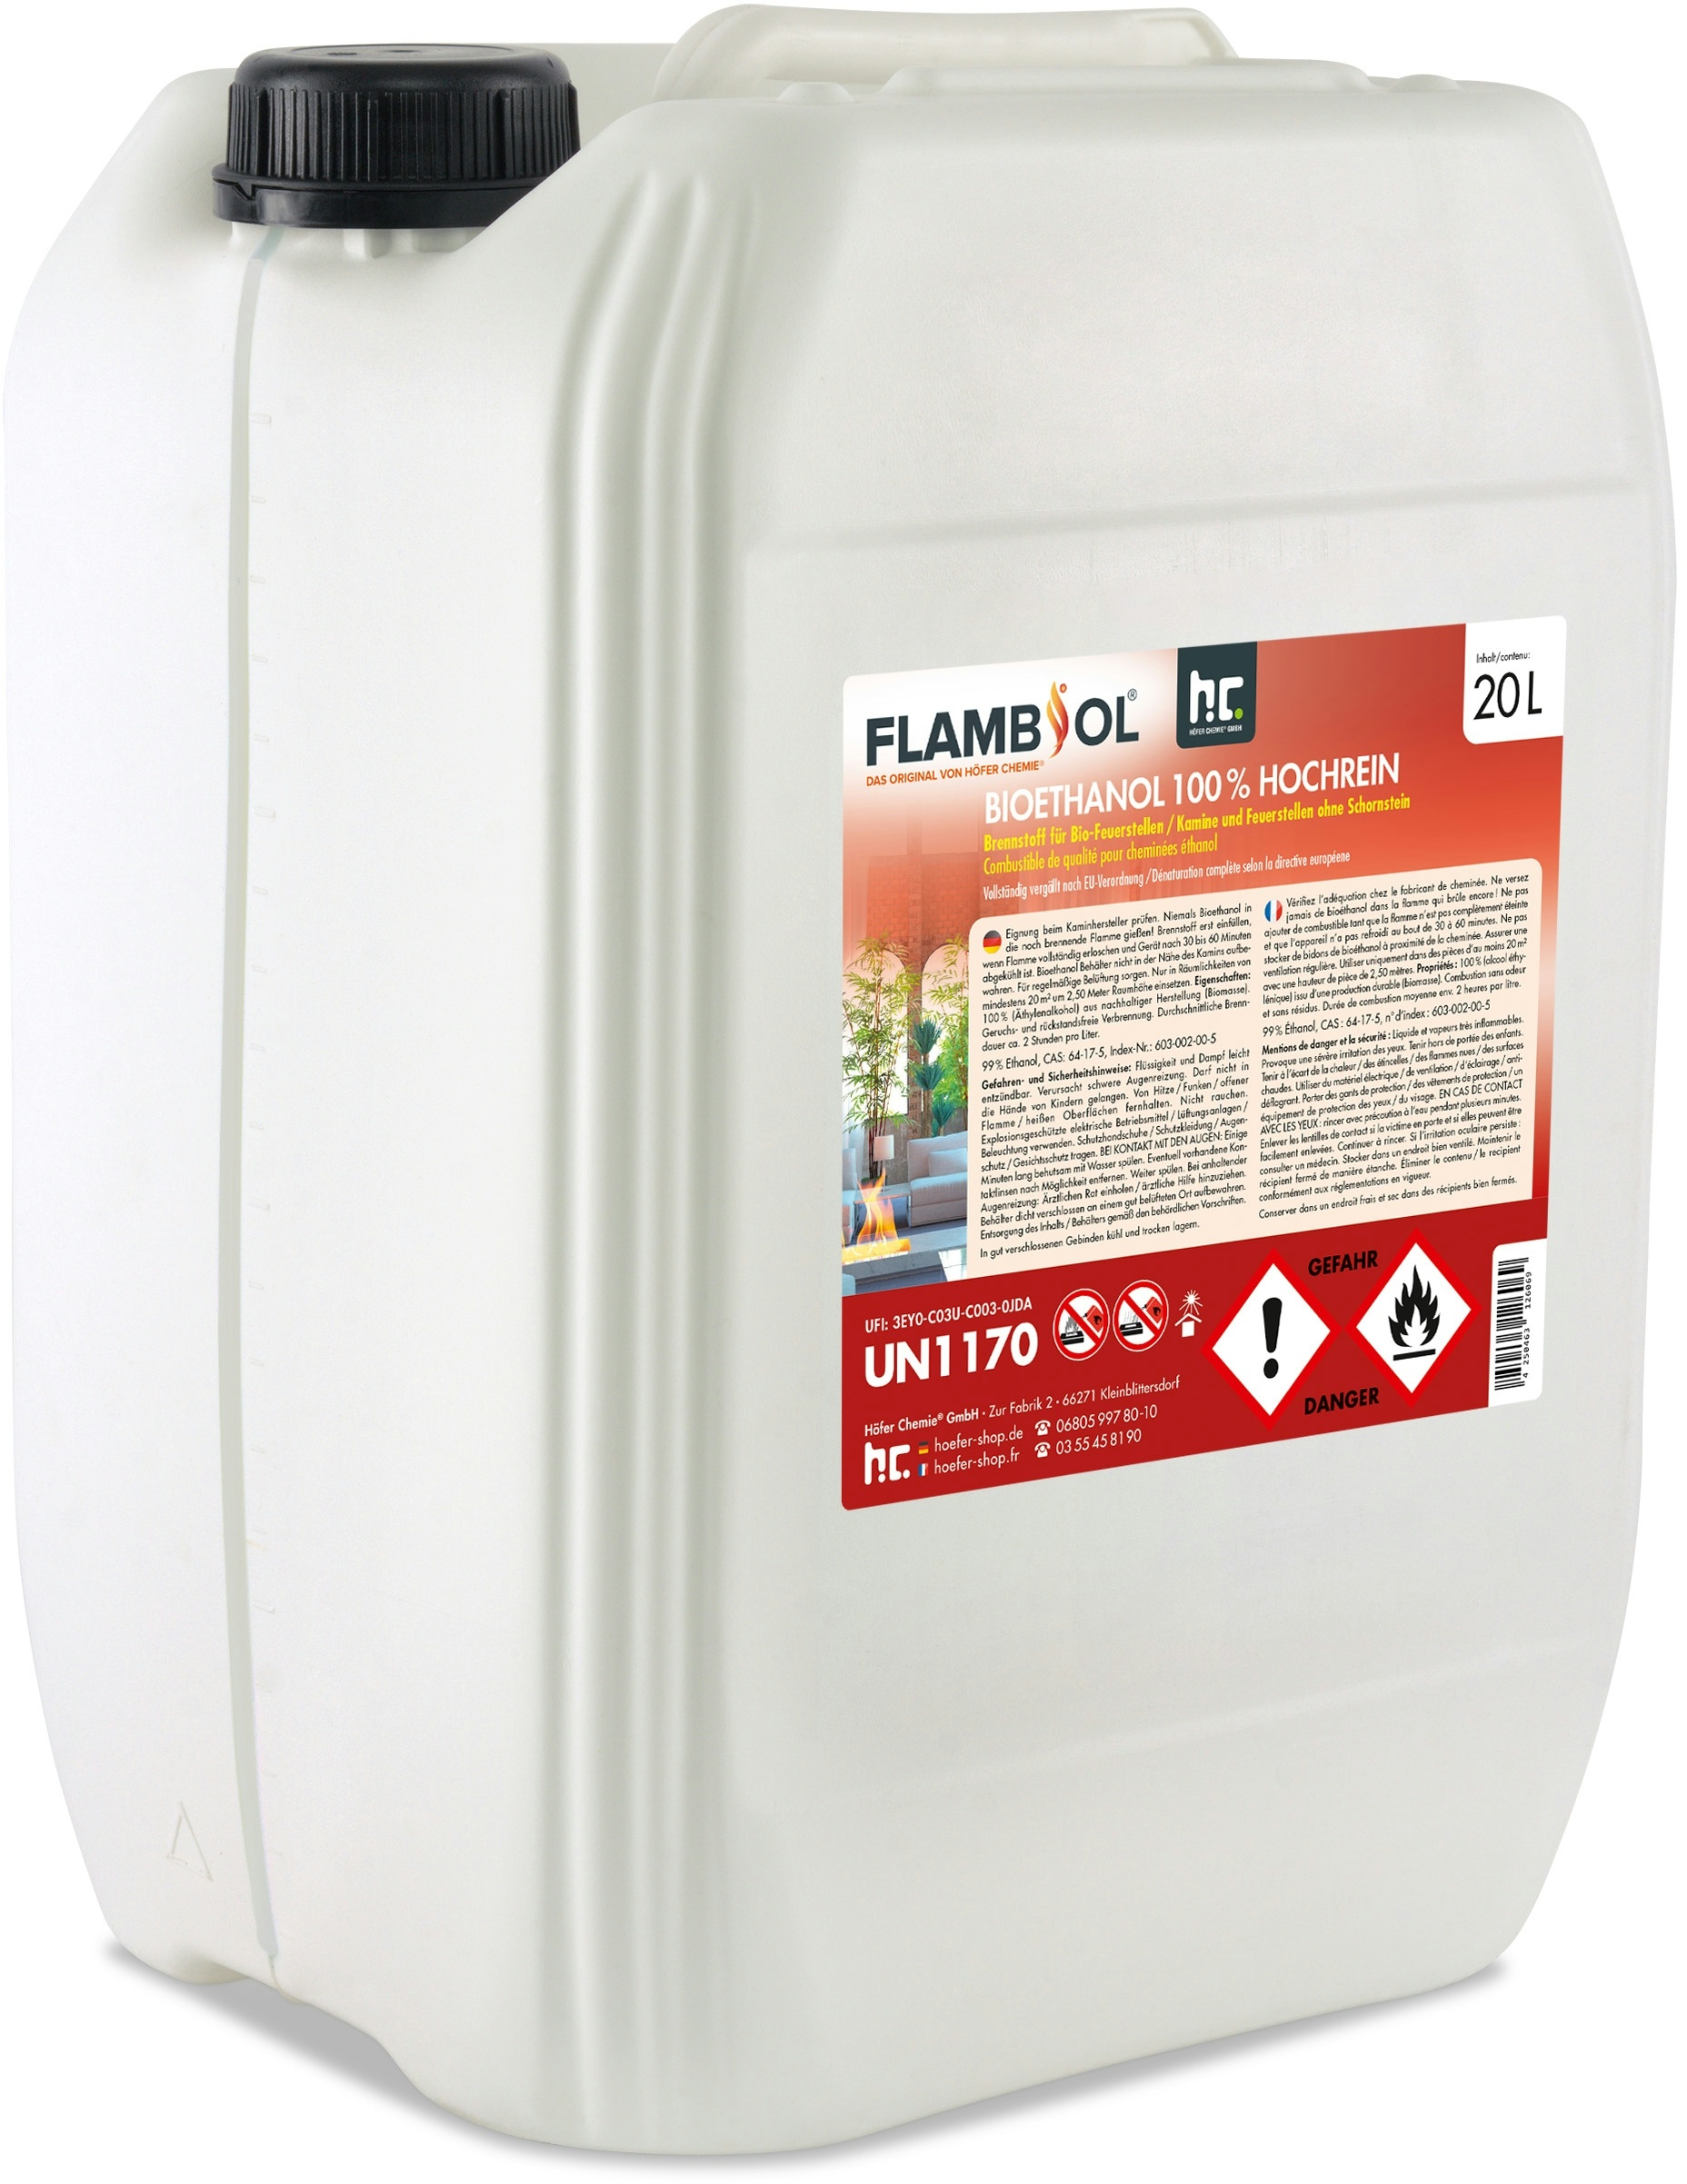 6 x 20 Liter FLAMBIOL® Bioethanol 100% Hochrein